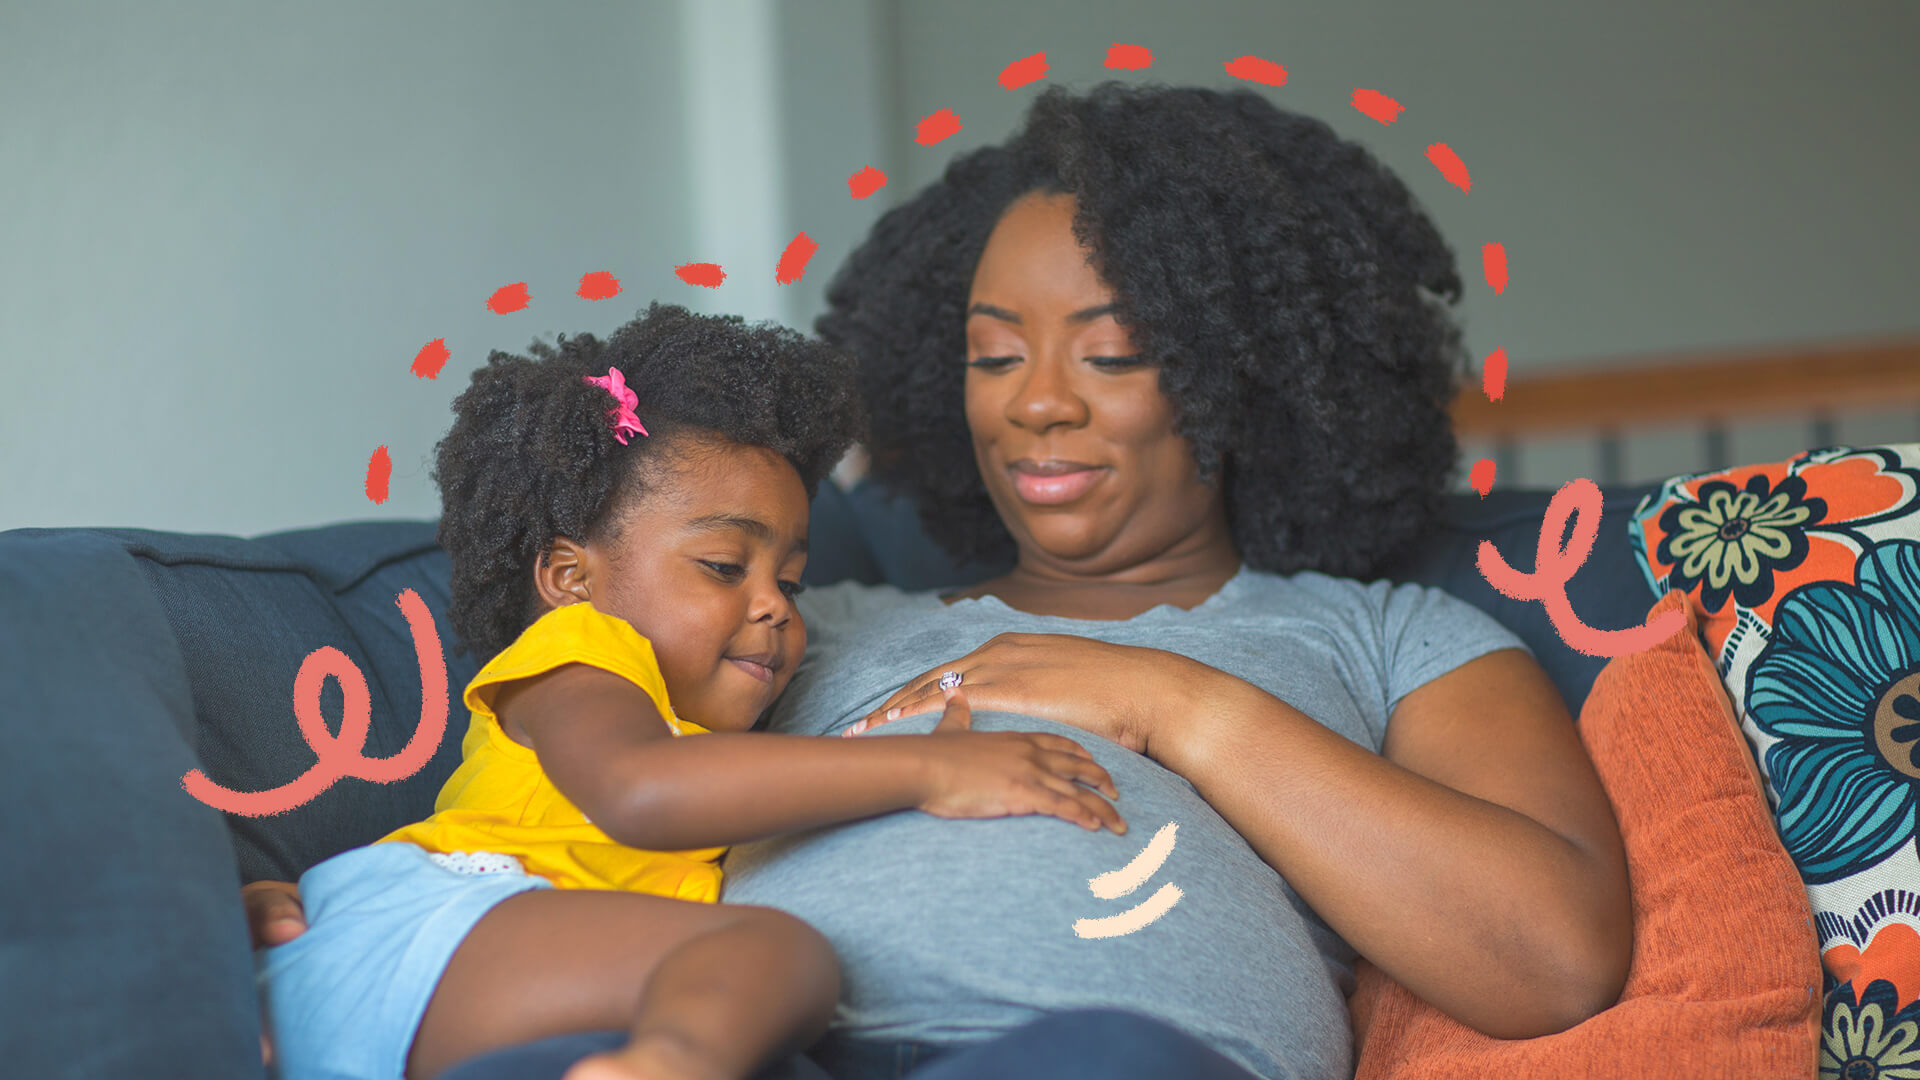 Imagem de uma mulher negra grávida, sentada no sofá, acompanhada da filha, também negra, que está com a mão em sua barriga.